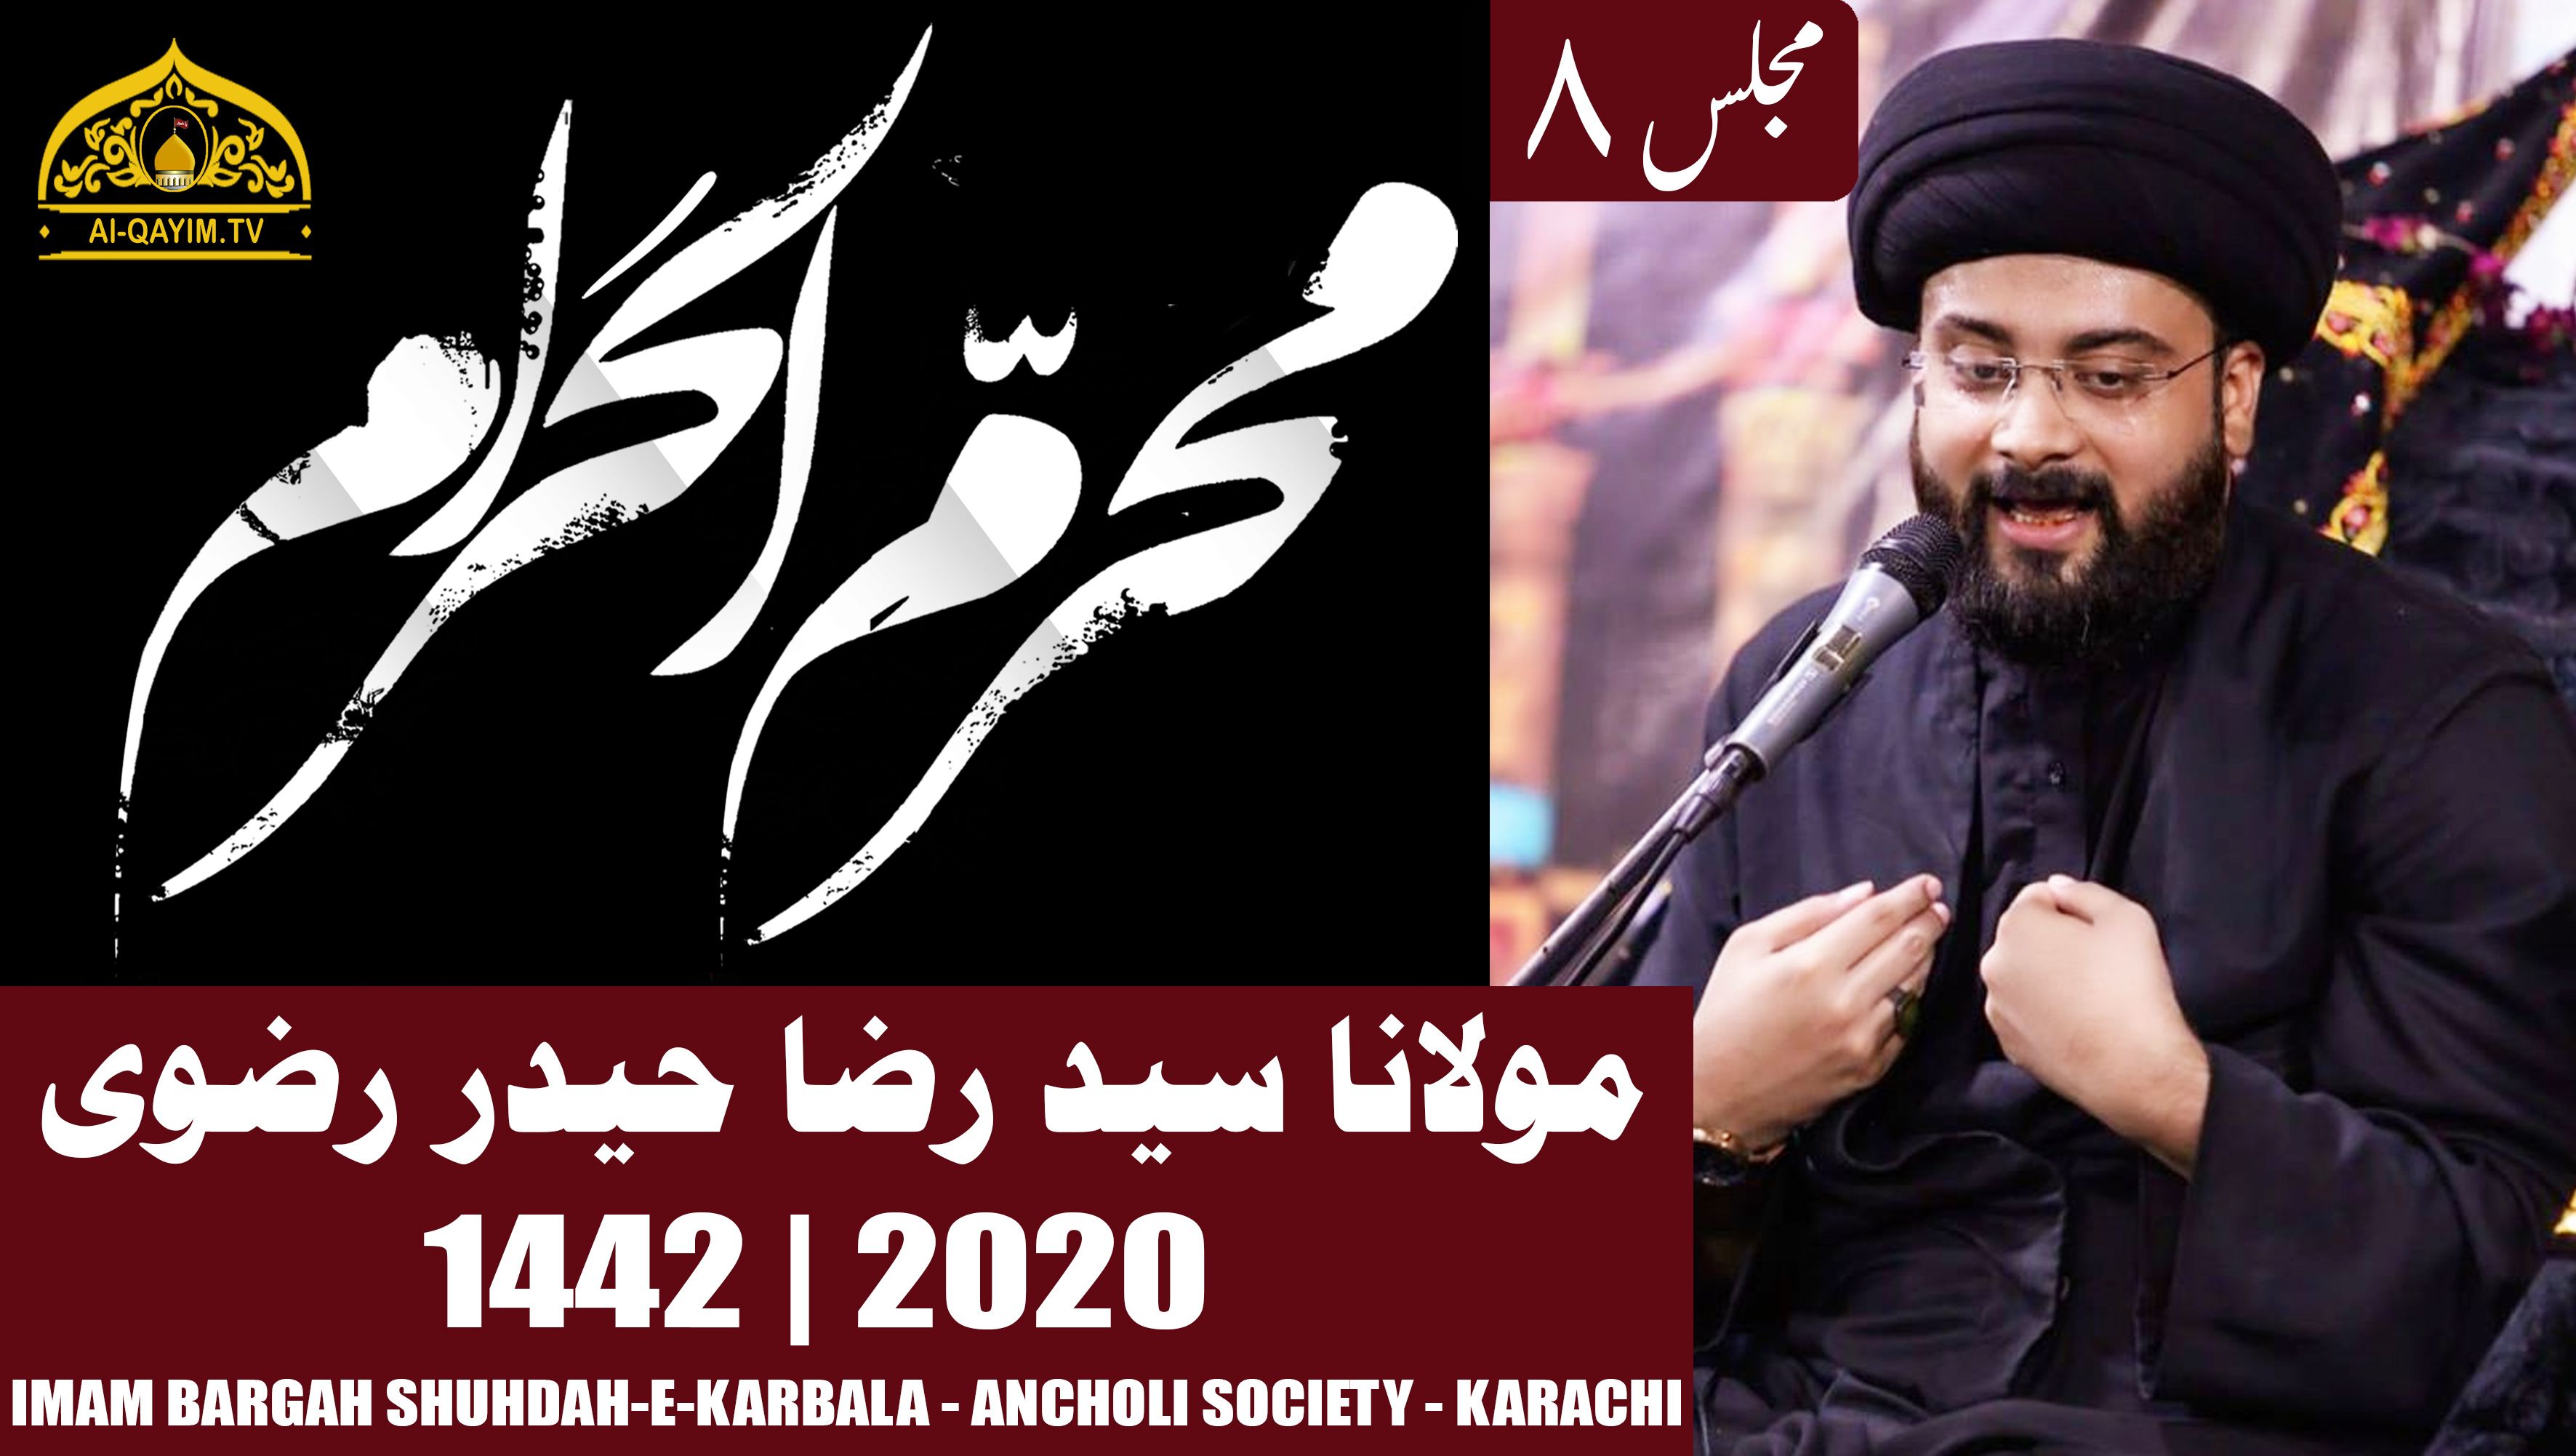 8th Muharram Majlis - 1442/2020 - Maulana Raza Haider - Imam Bargah Shuhdah-e-Karbala - Ancholi